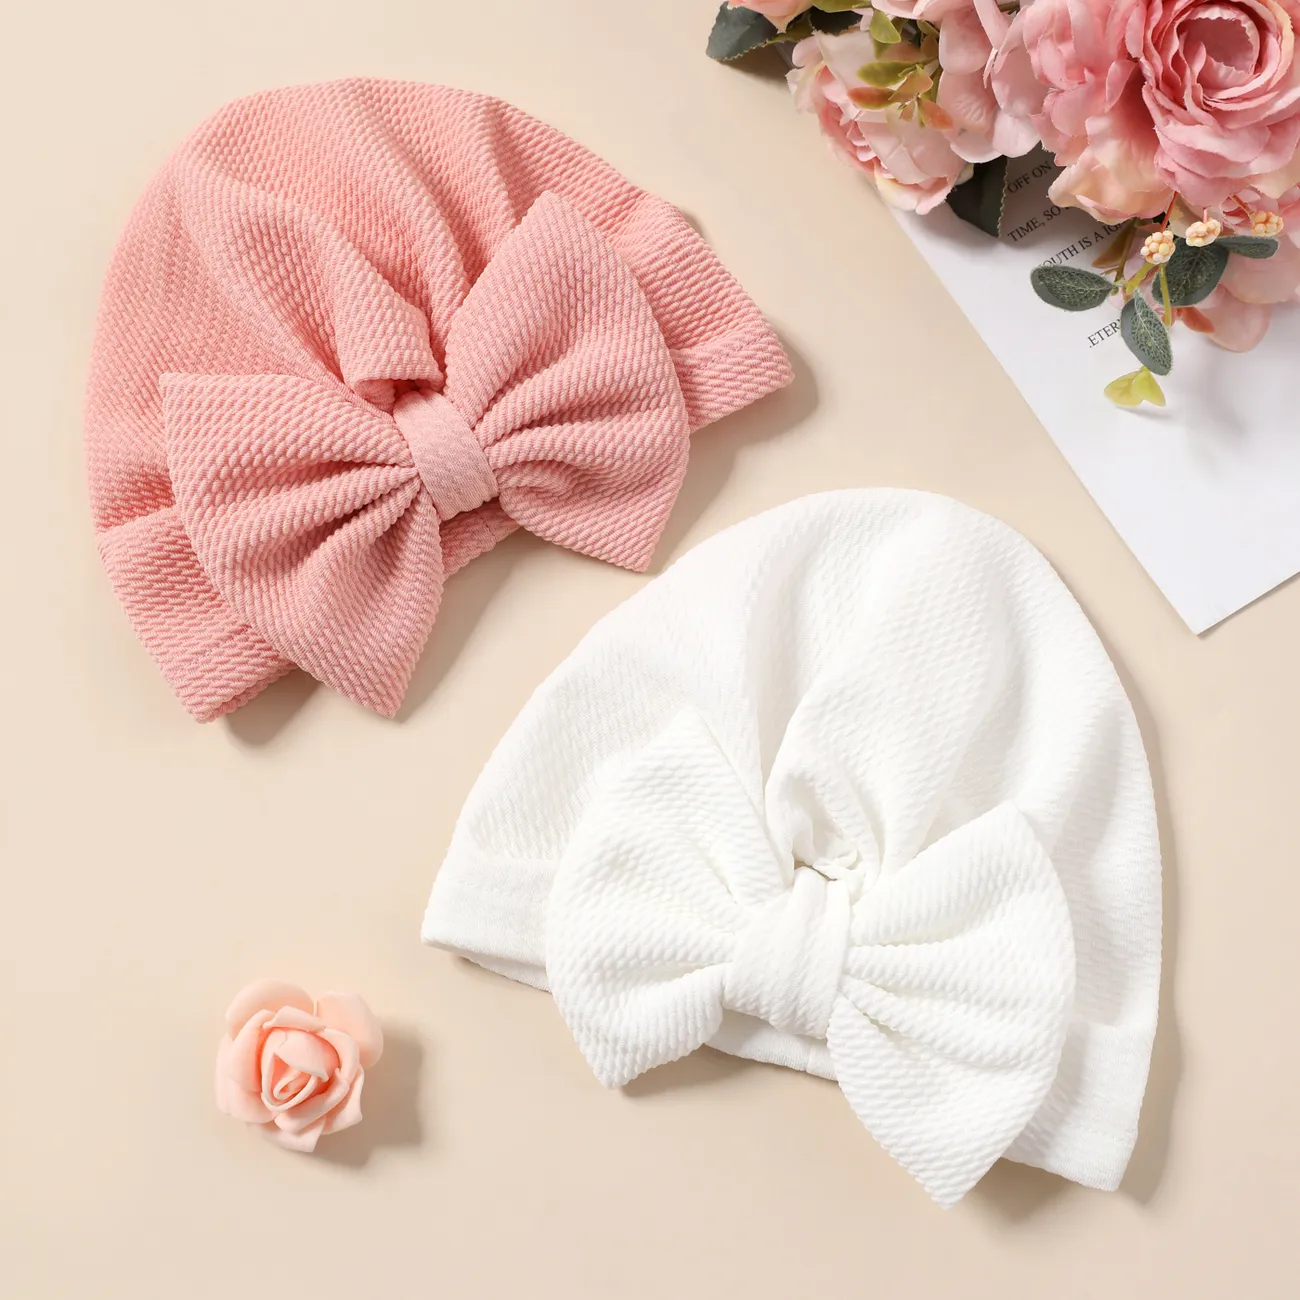 Chapeau de turban à texture solide pour bébé Blanc big image 1